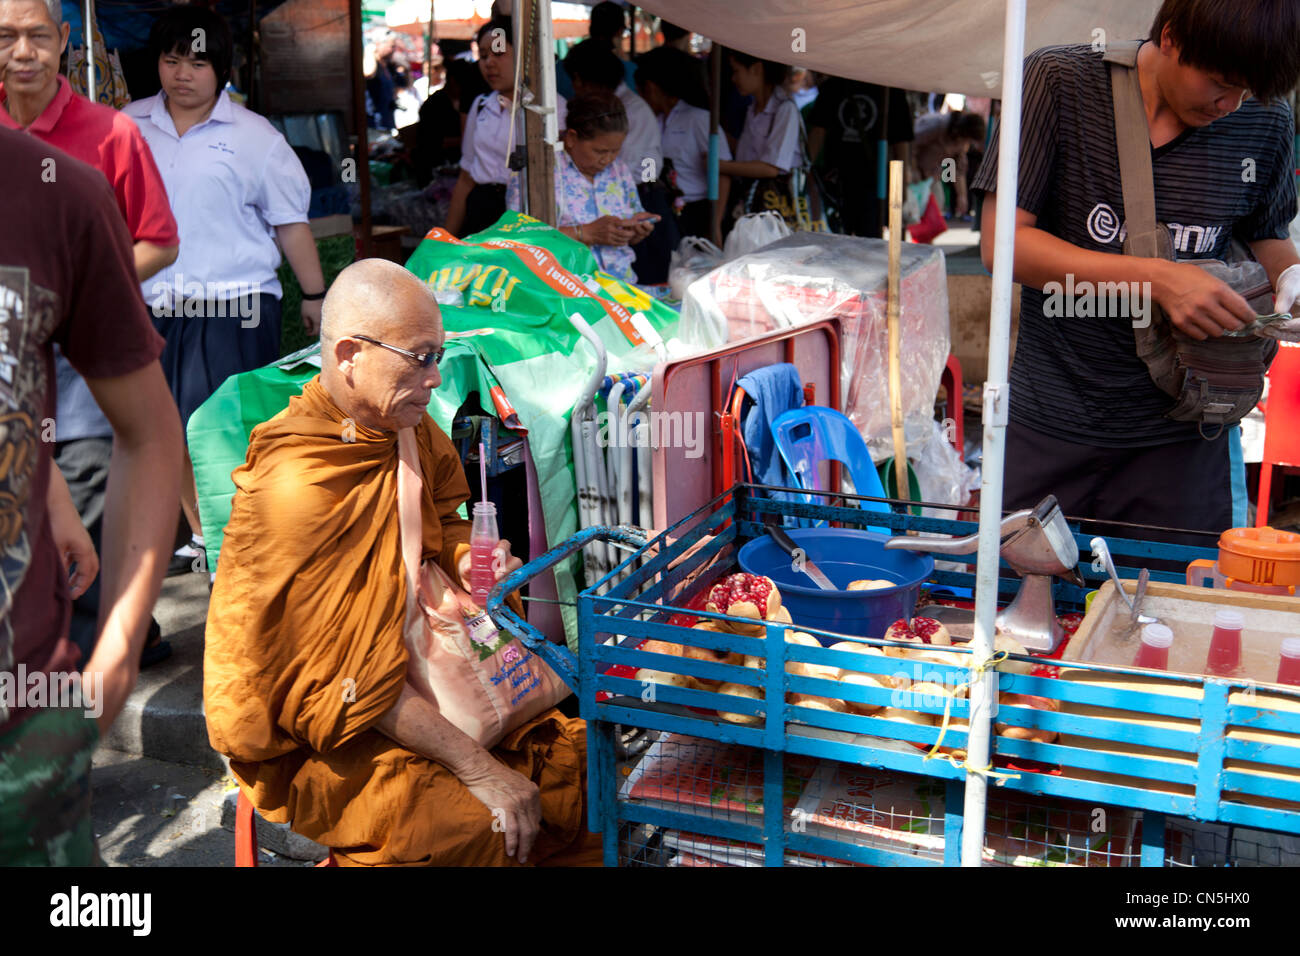 A Buddhist monk having a drink at the market (Bangkok - Thailand). Moine Bouddhiste prenant un rafraîchissement au marché. Stock Photo